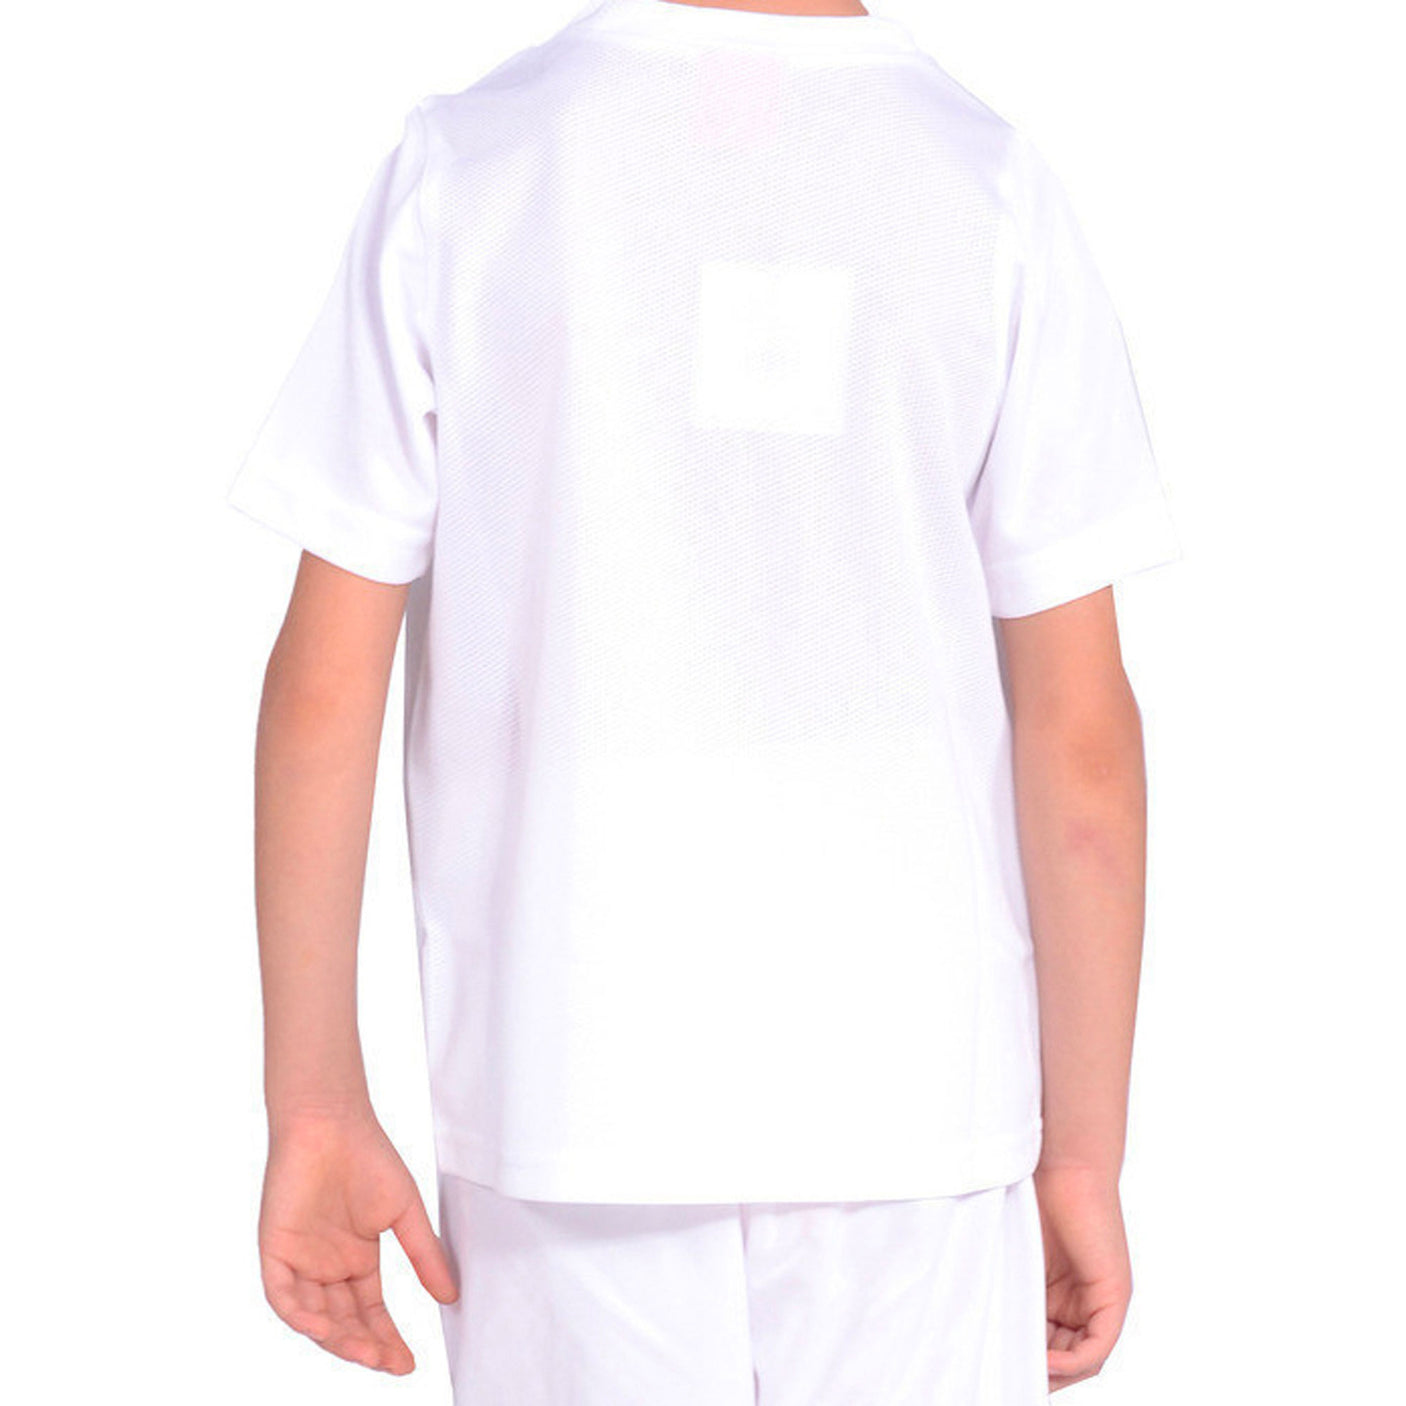 PUMA Kids Team Shirt White/Navy Back